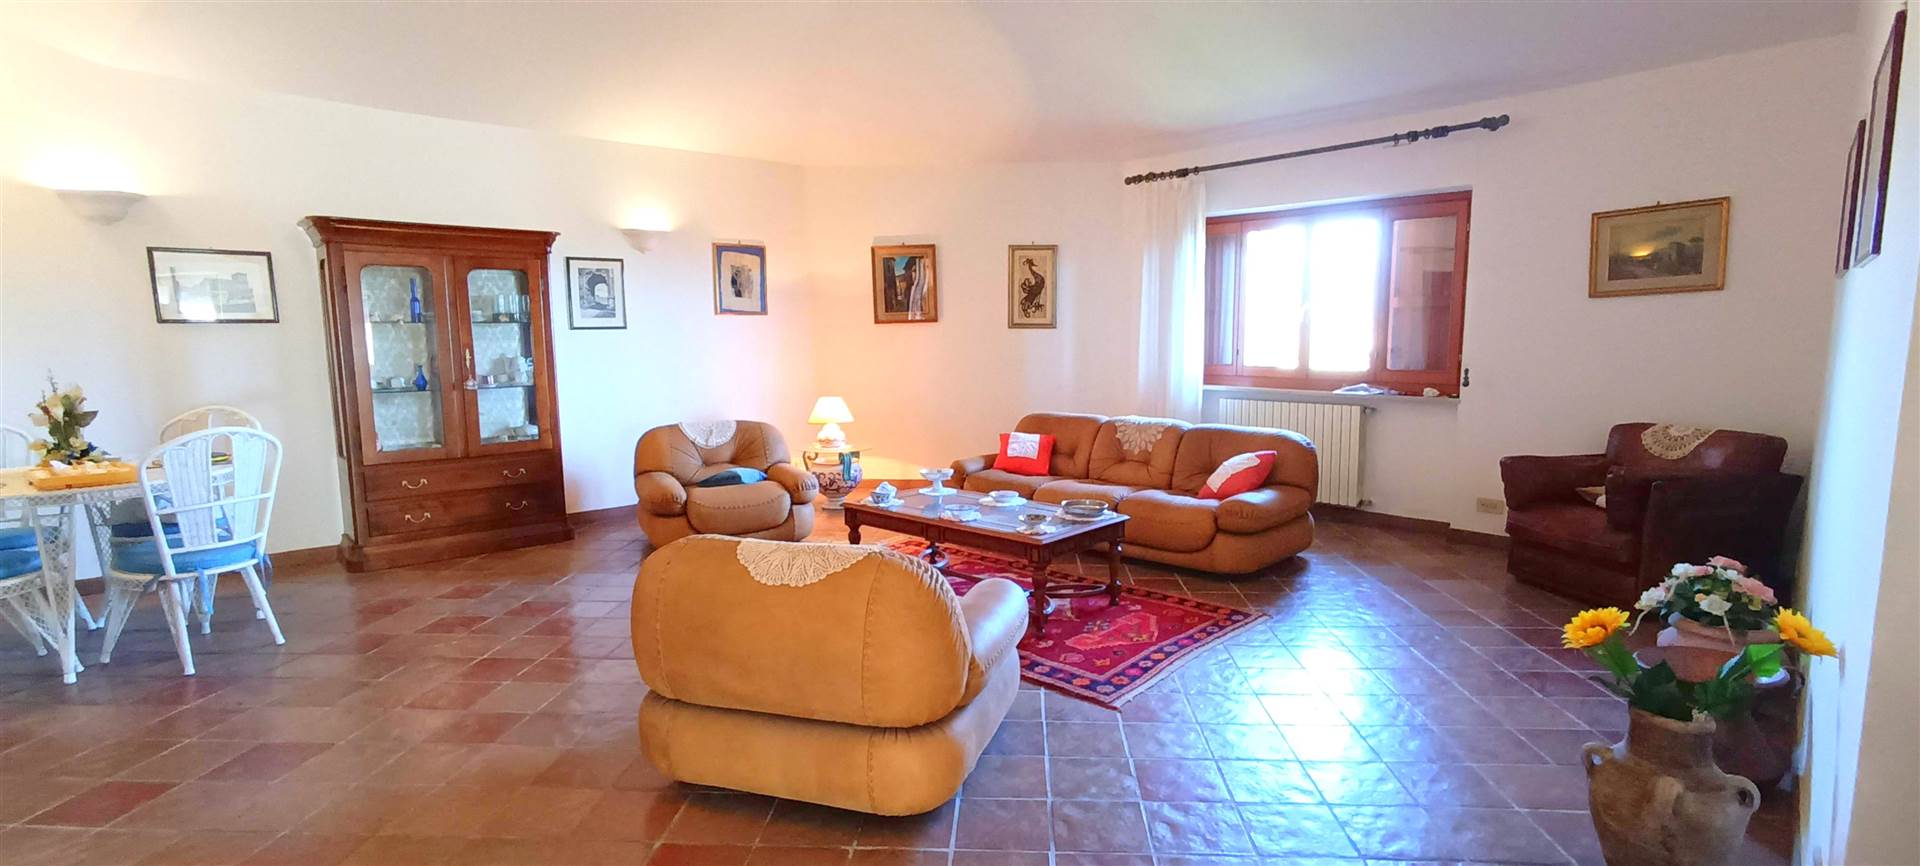 Appartamento in vendita a Tarano, 13 locali, prezzo € 295.000 | PortaleAgenzieImmobiliari.it